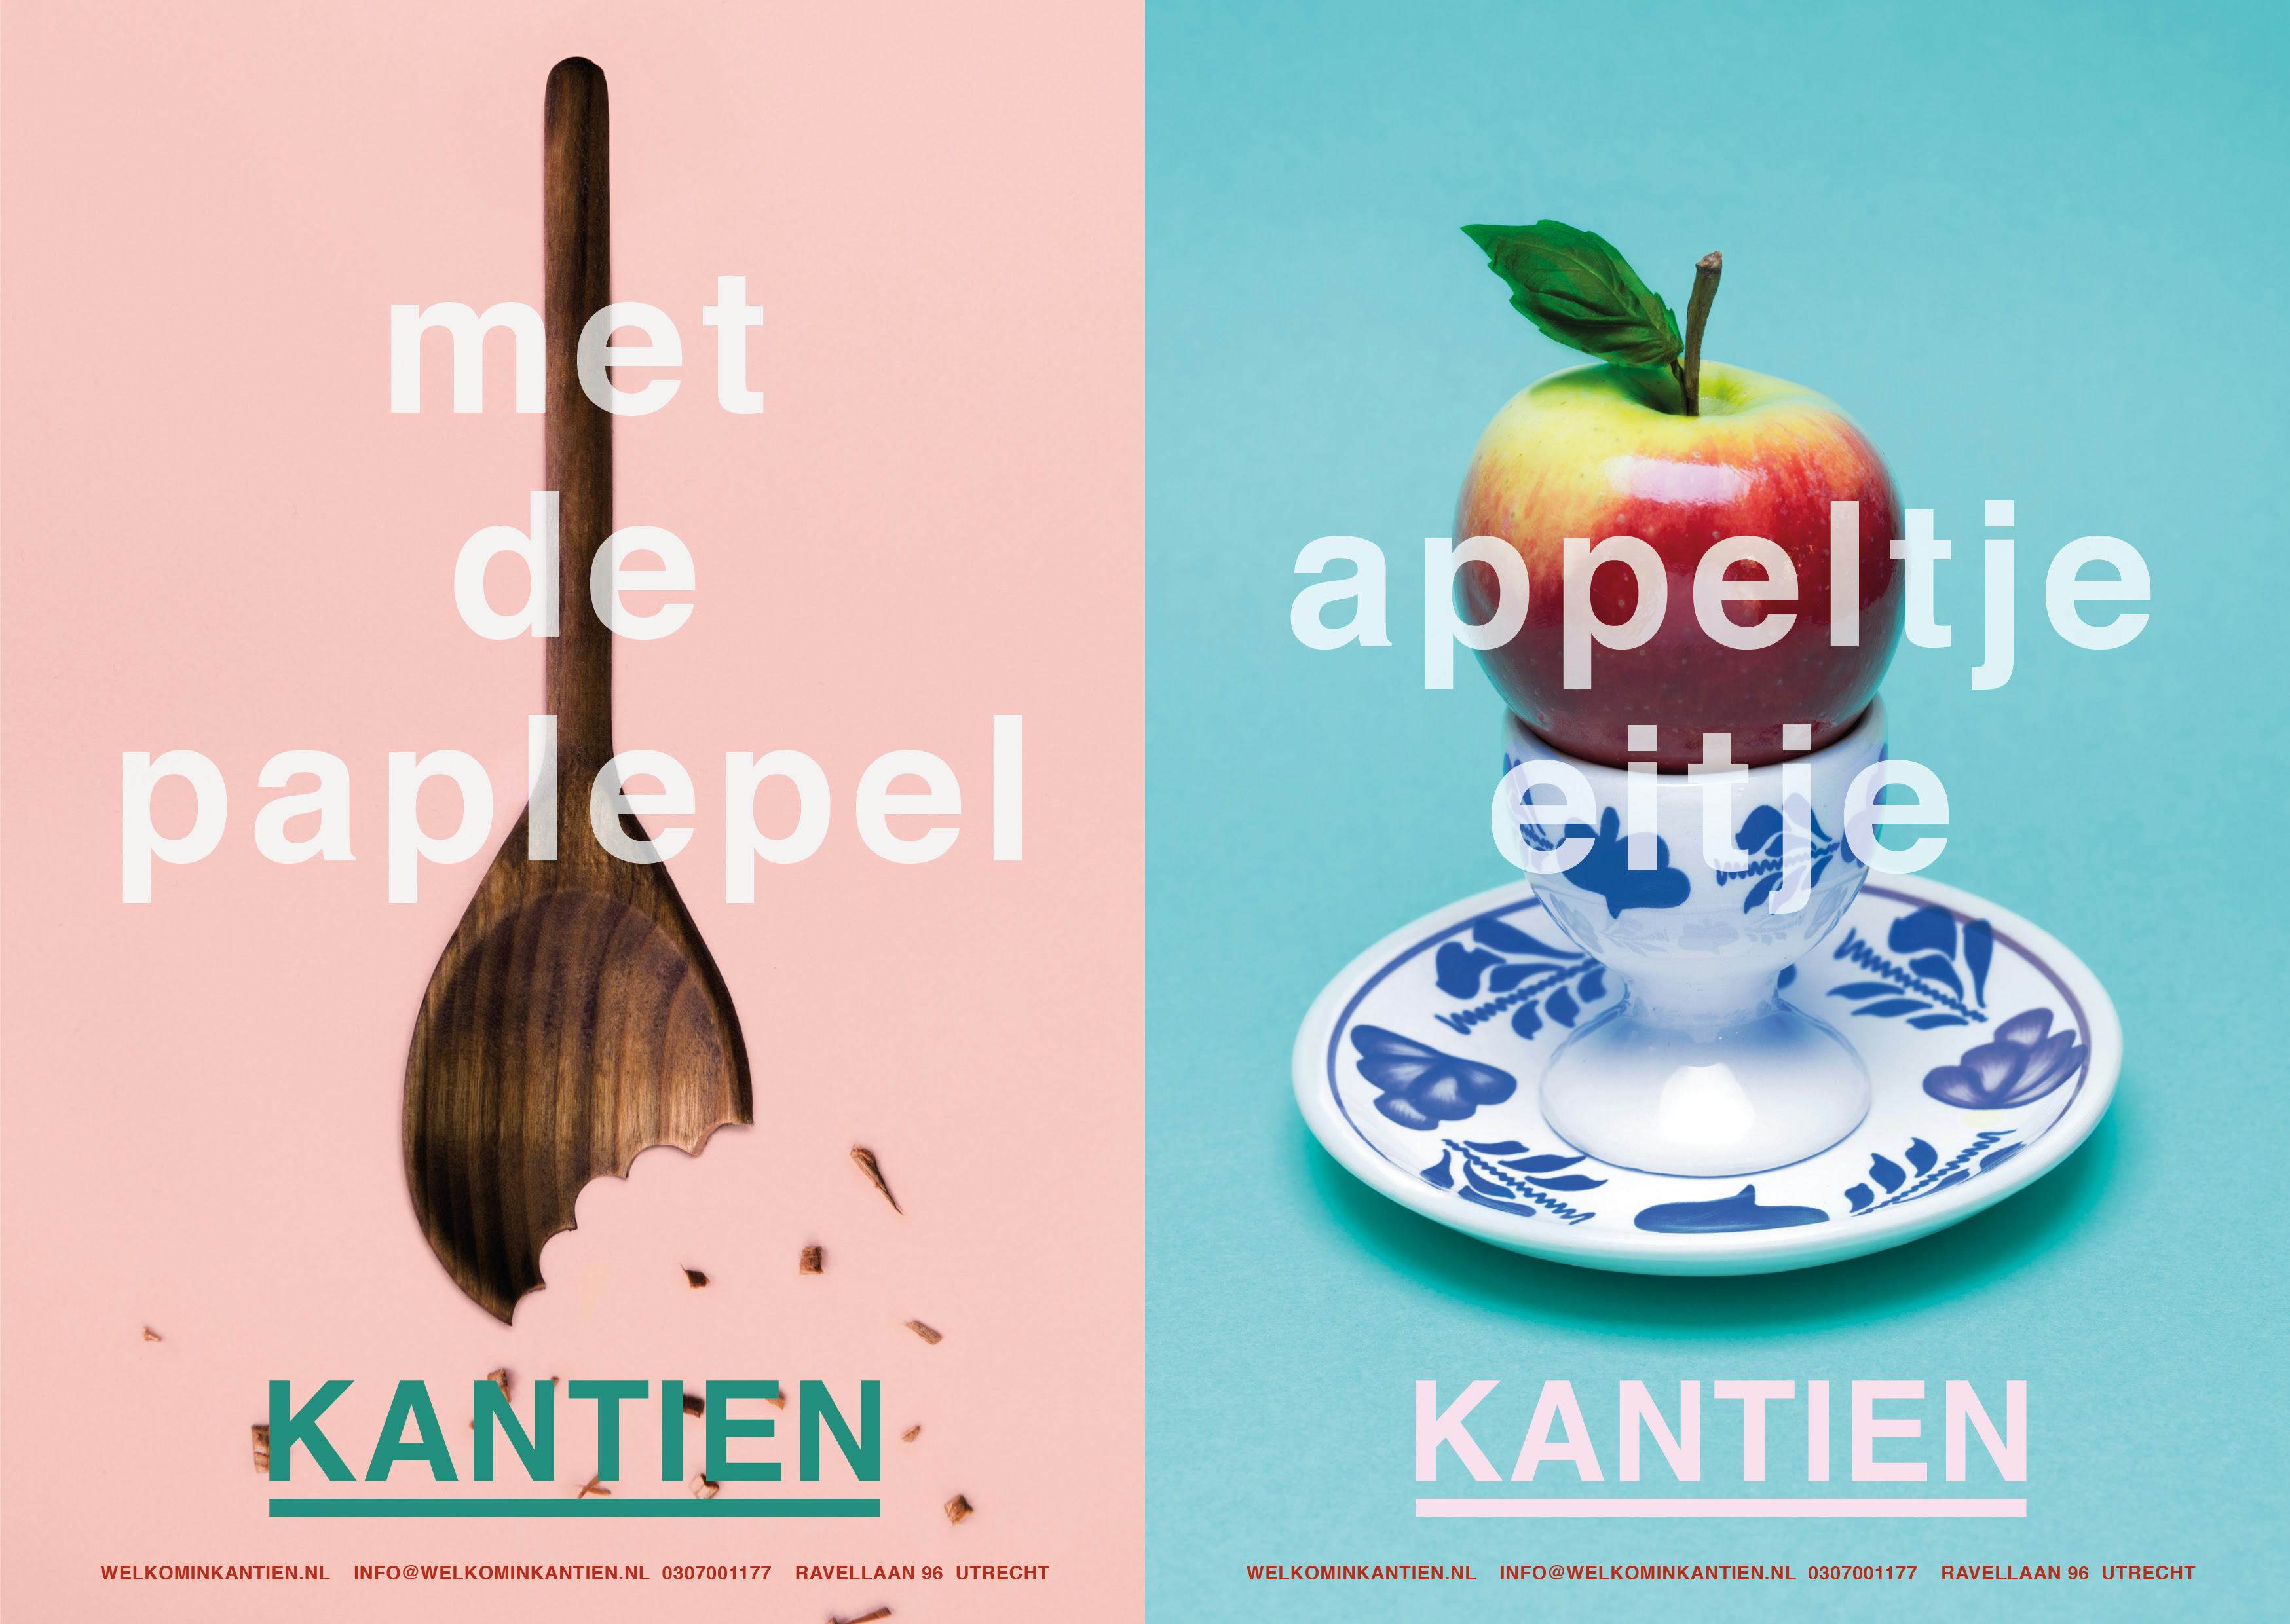 Stadsrestaurant Kantien in Utrecht maakt zich op voor opening